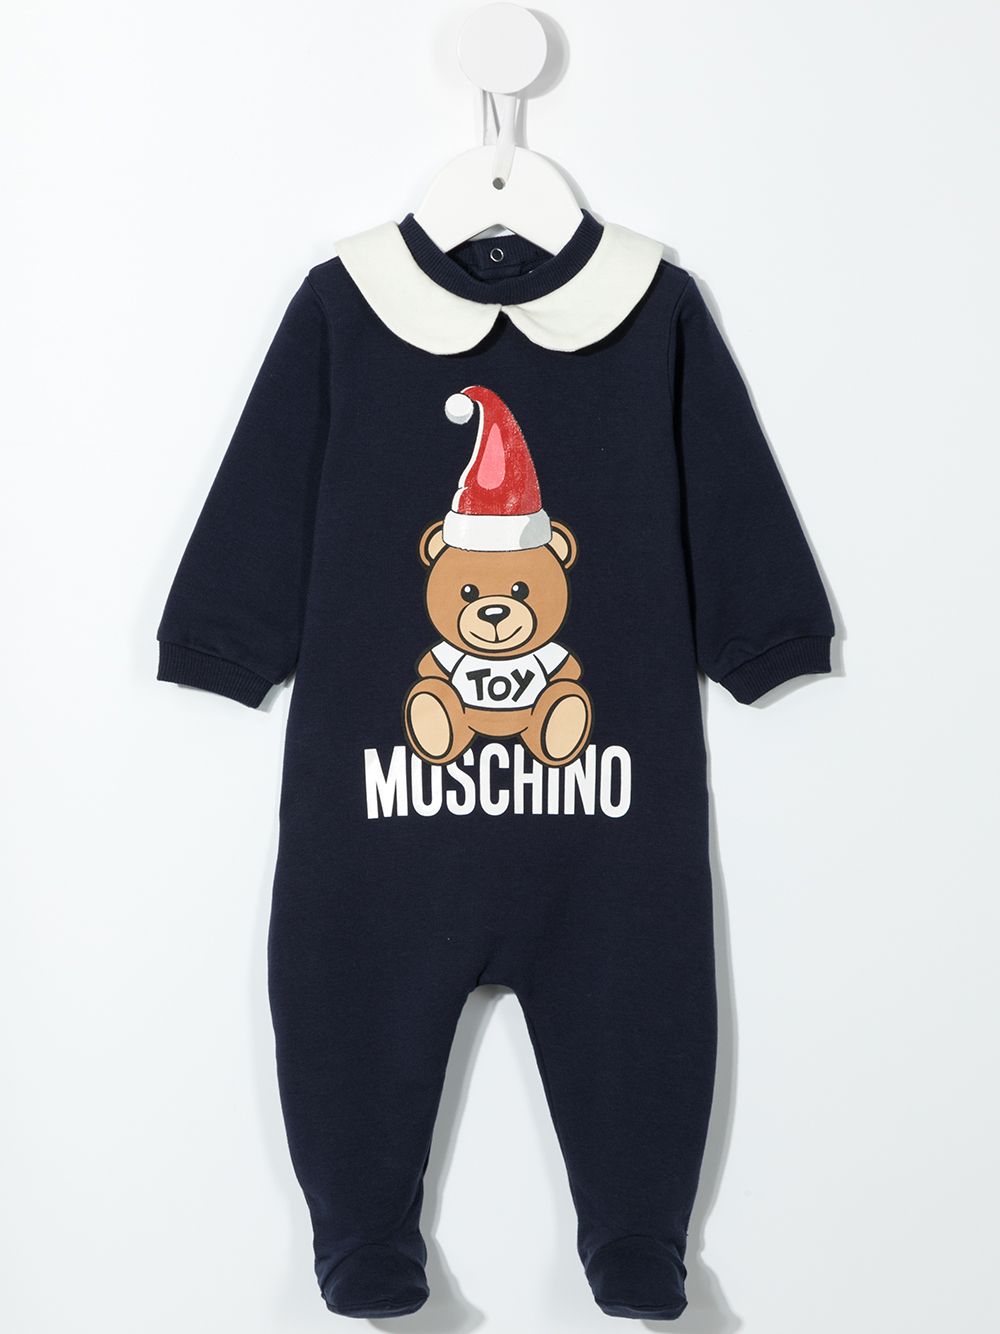 фото Moschino kids комплект teddy bear из пижамы и нагрудника